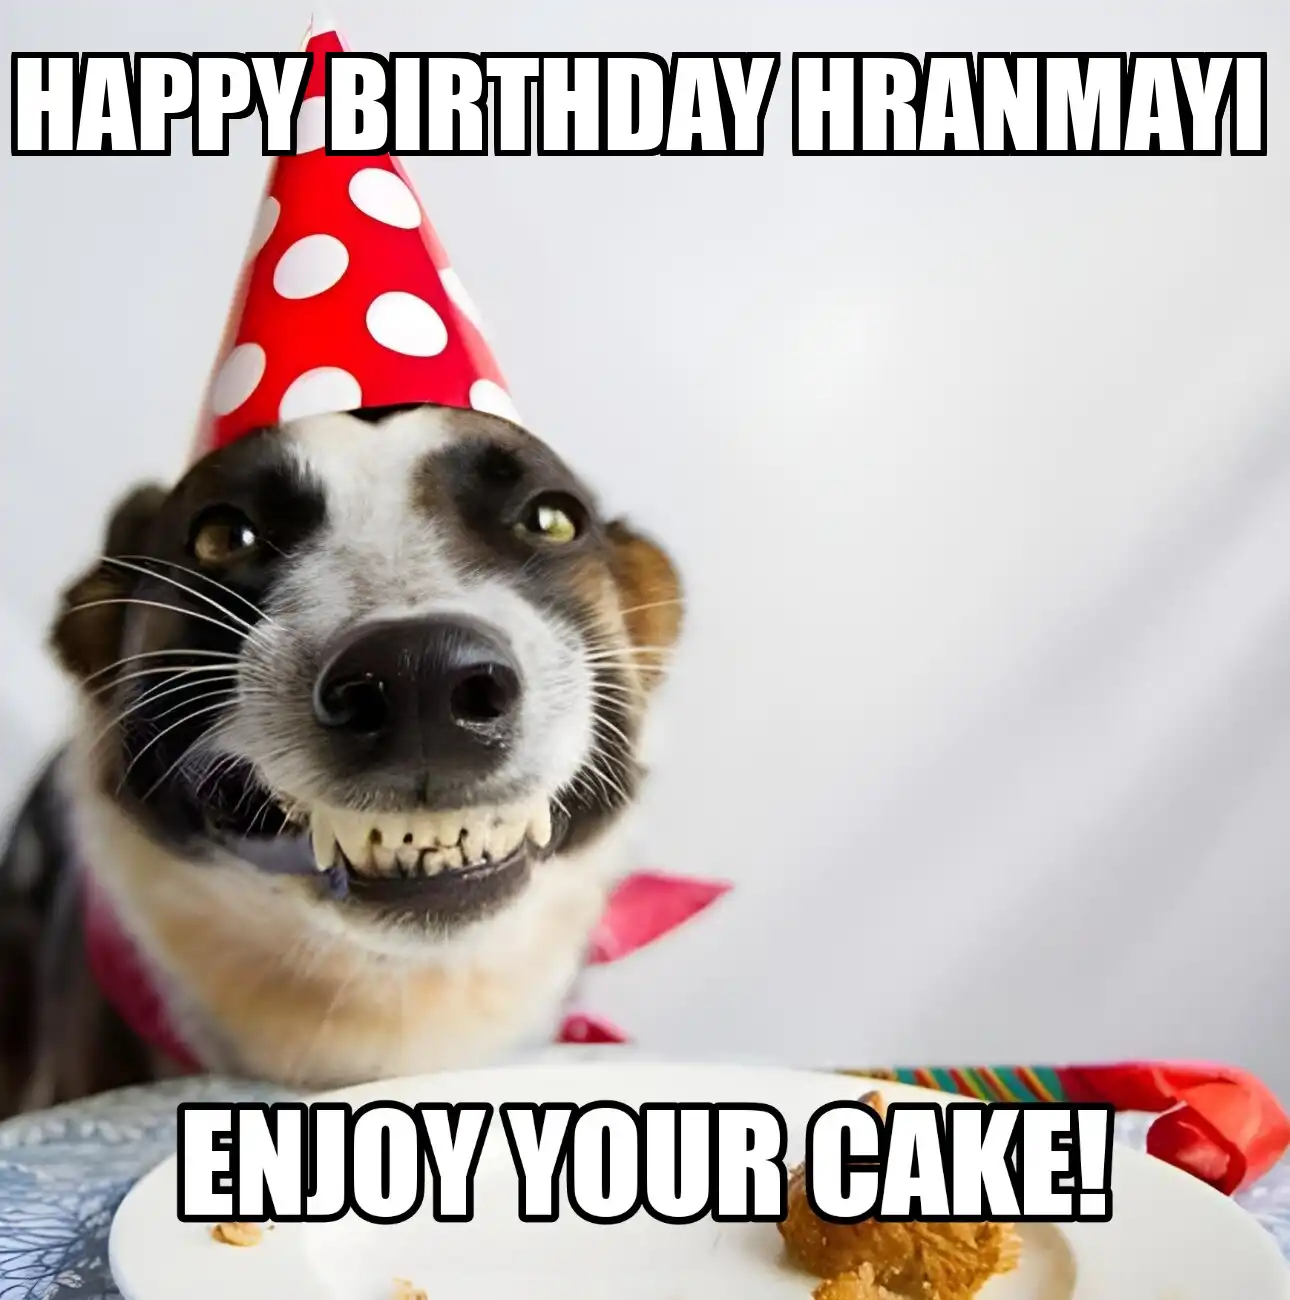 Happy Birthday Hranmayi Enjoy Your Cake Dog Meme